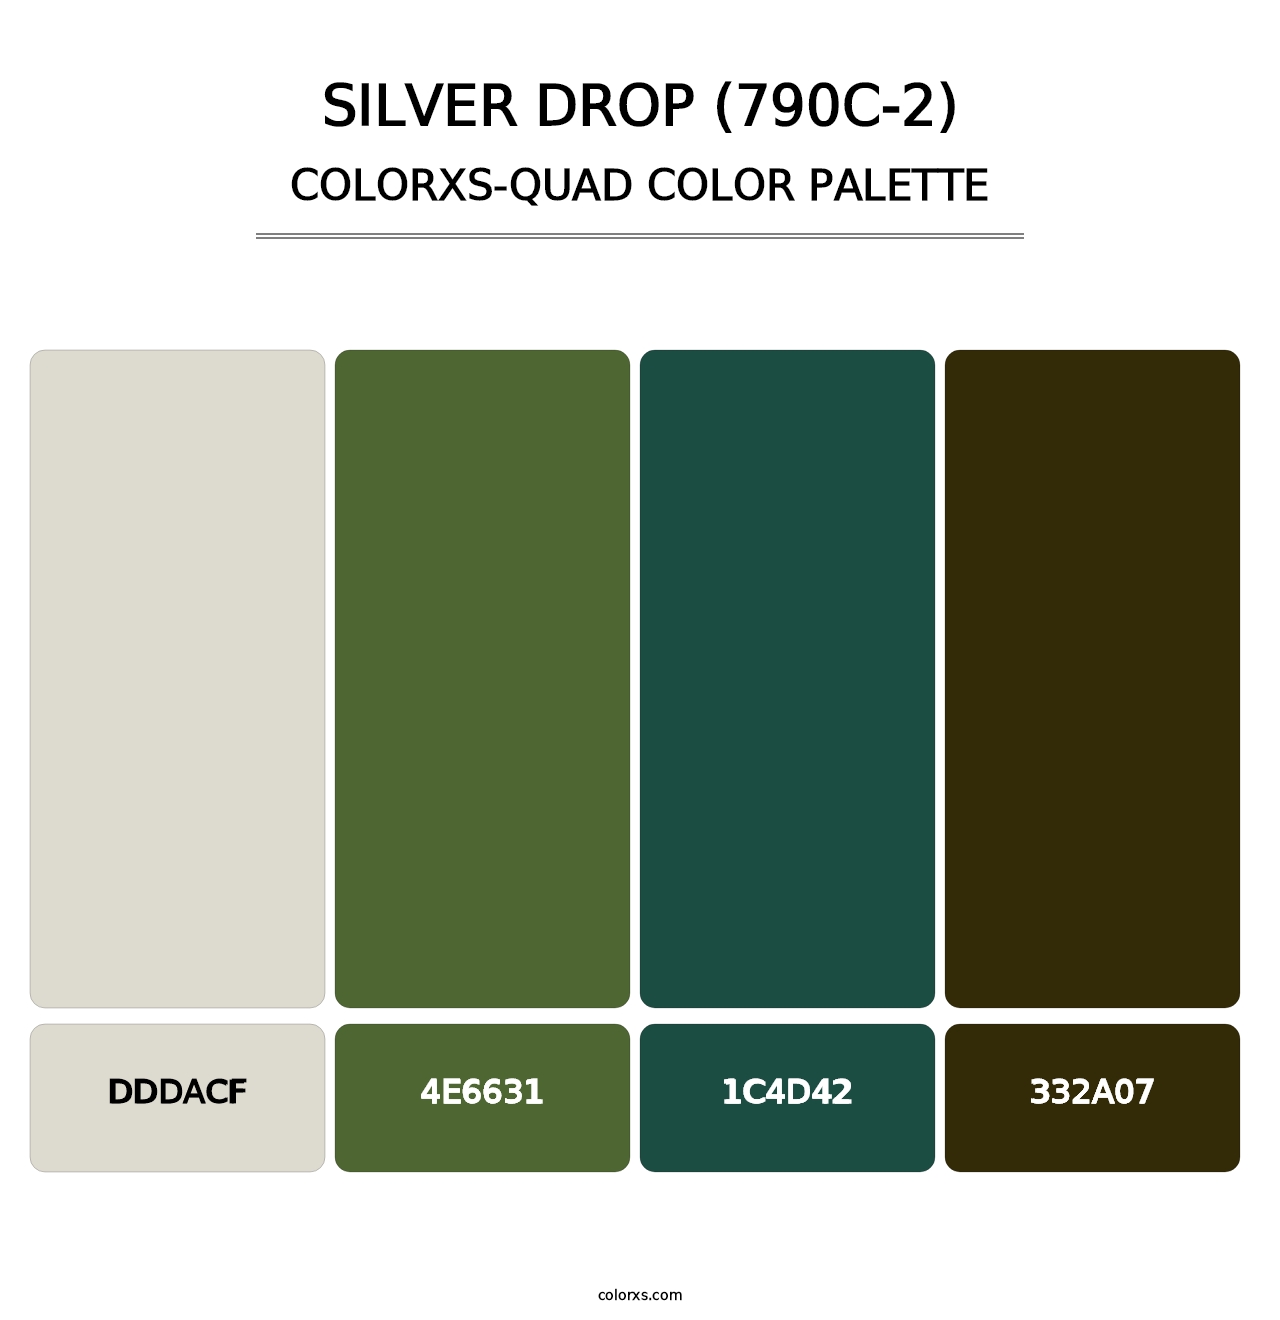 Silver Drop (790C-2) - Colorxs Quad Palette